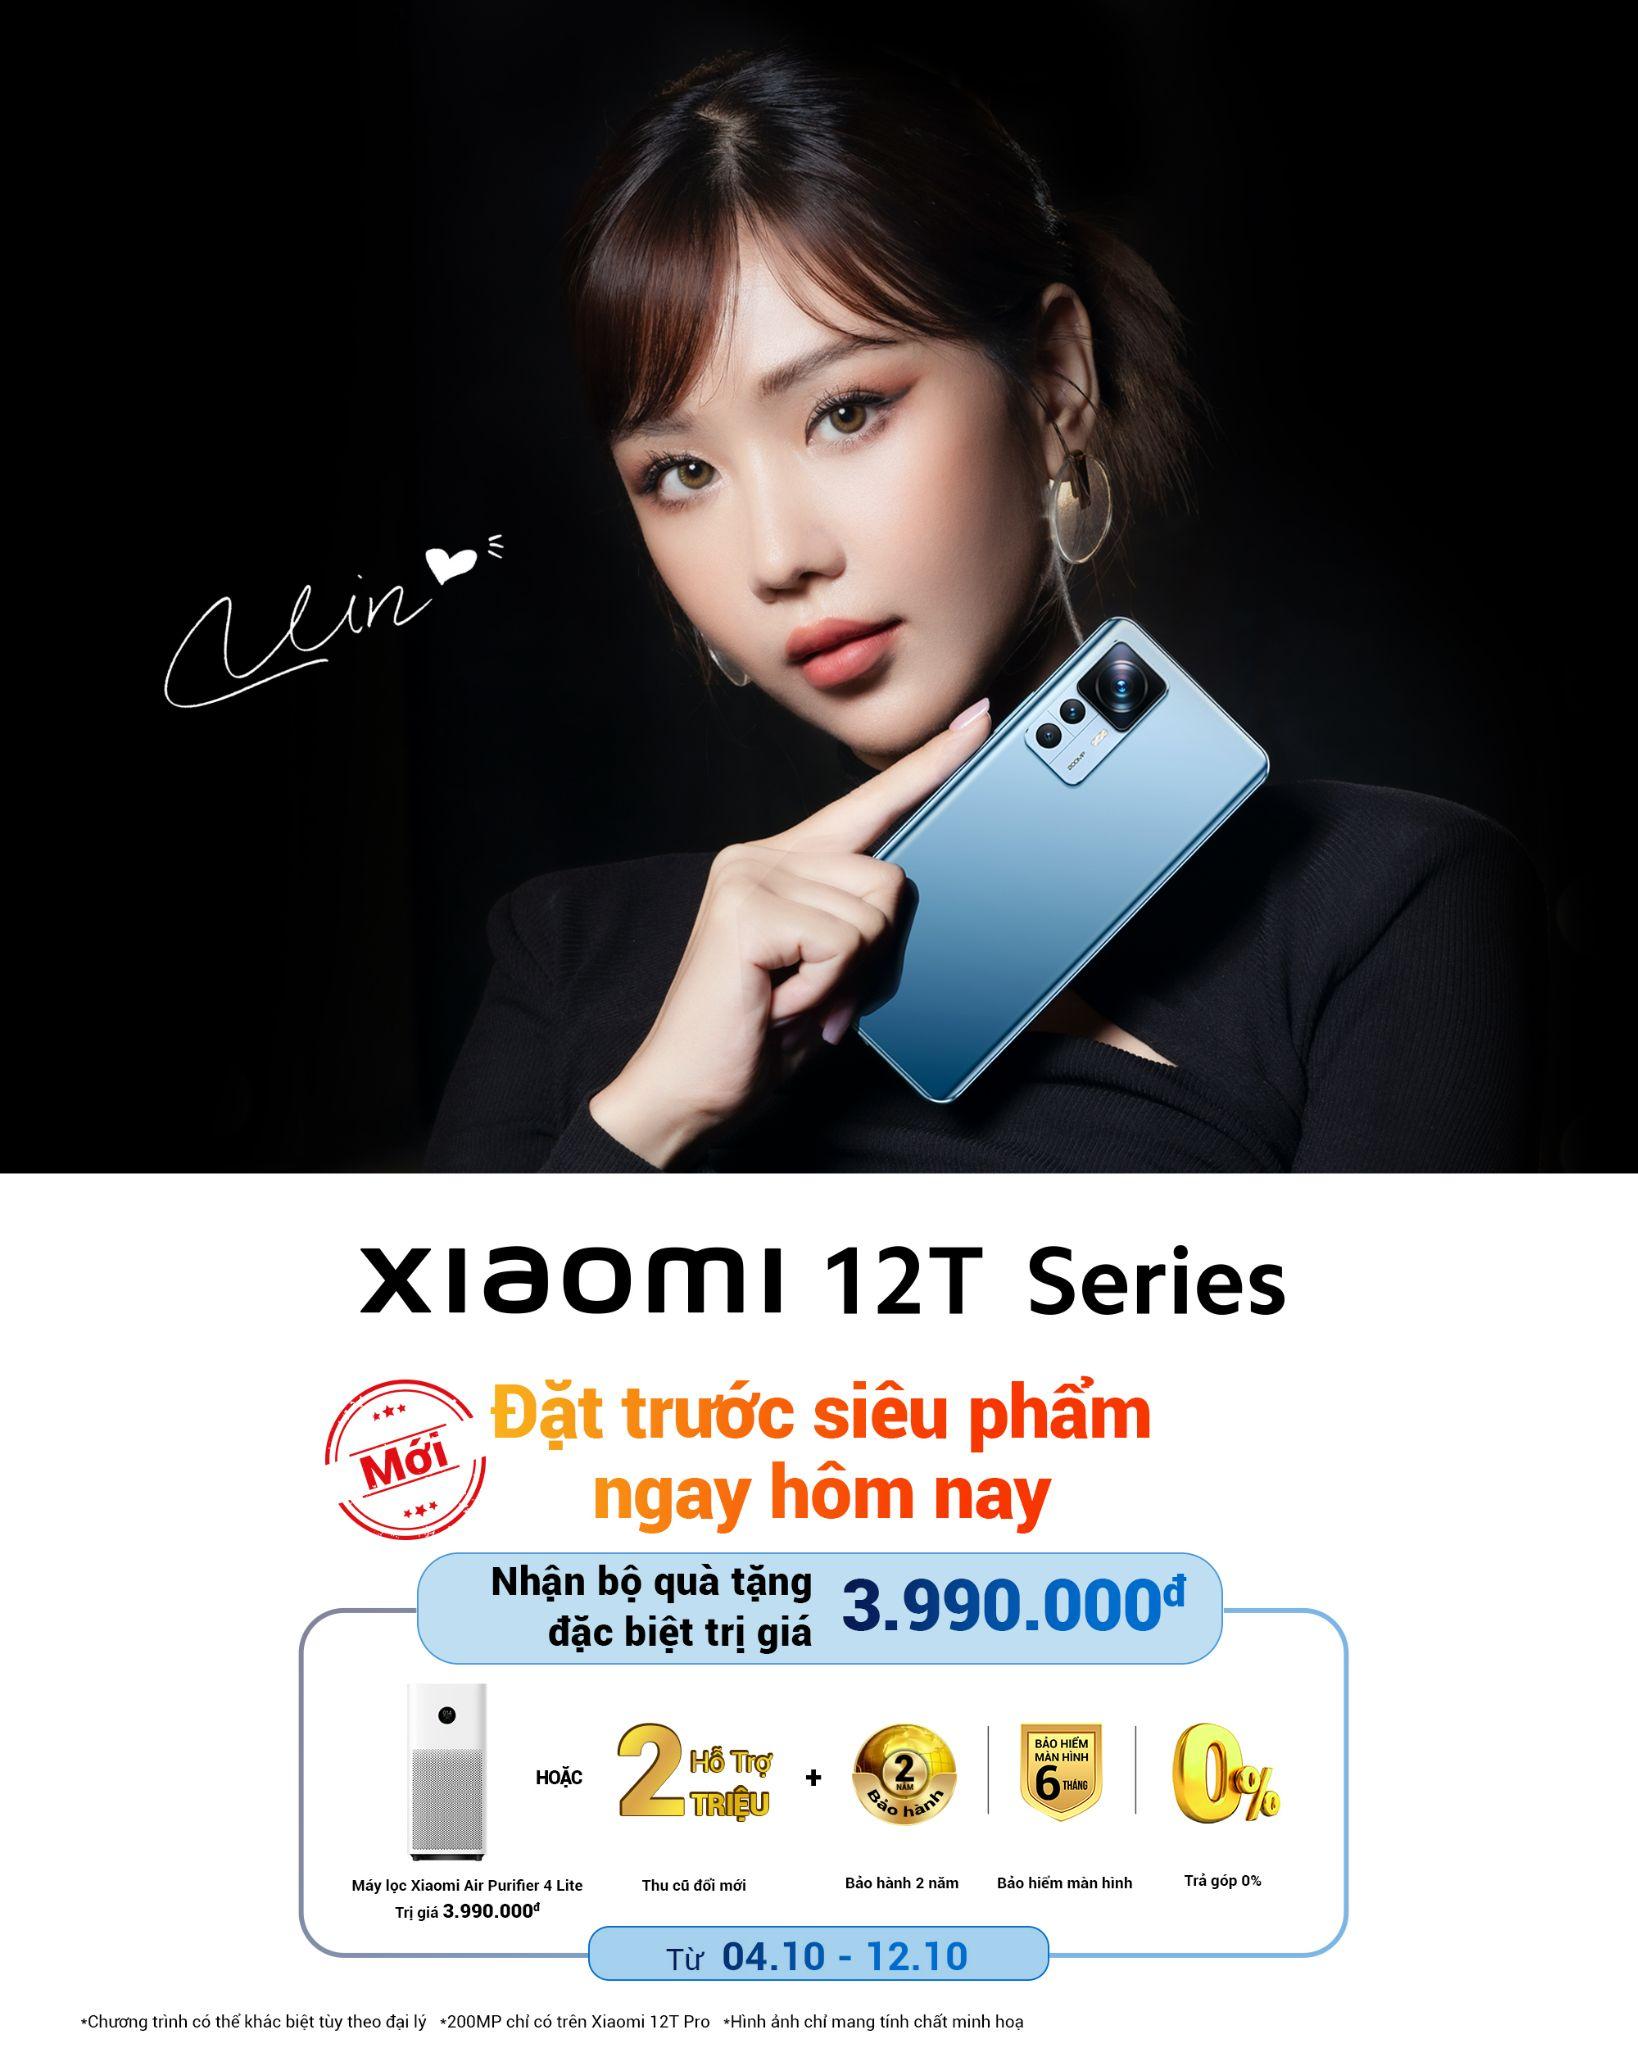 Xiaomi 12T Series sở hữu hệ thống nhiếp ảnh hàng đầu thị trường - Ảnh 4.